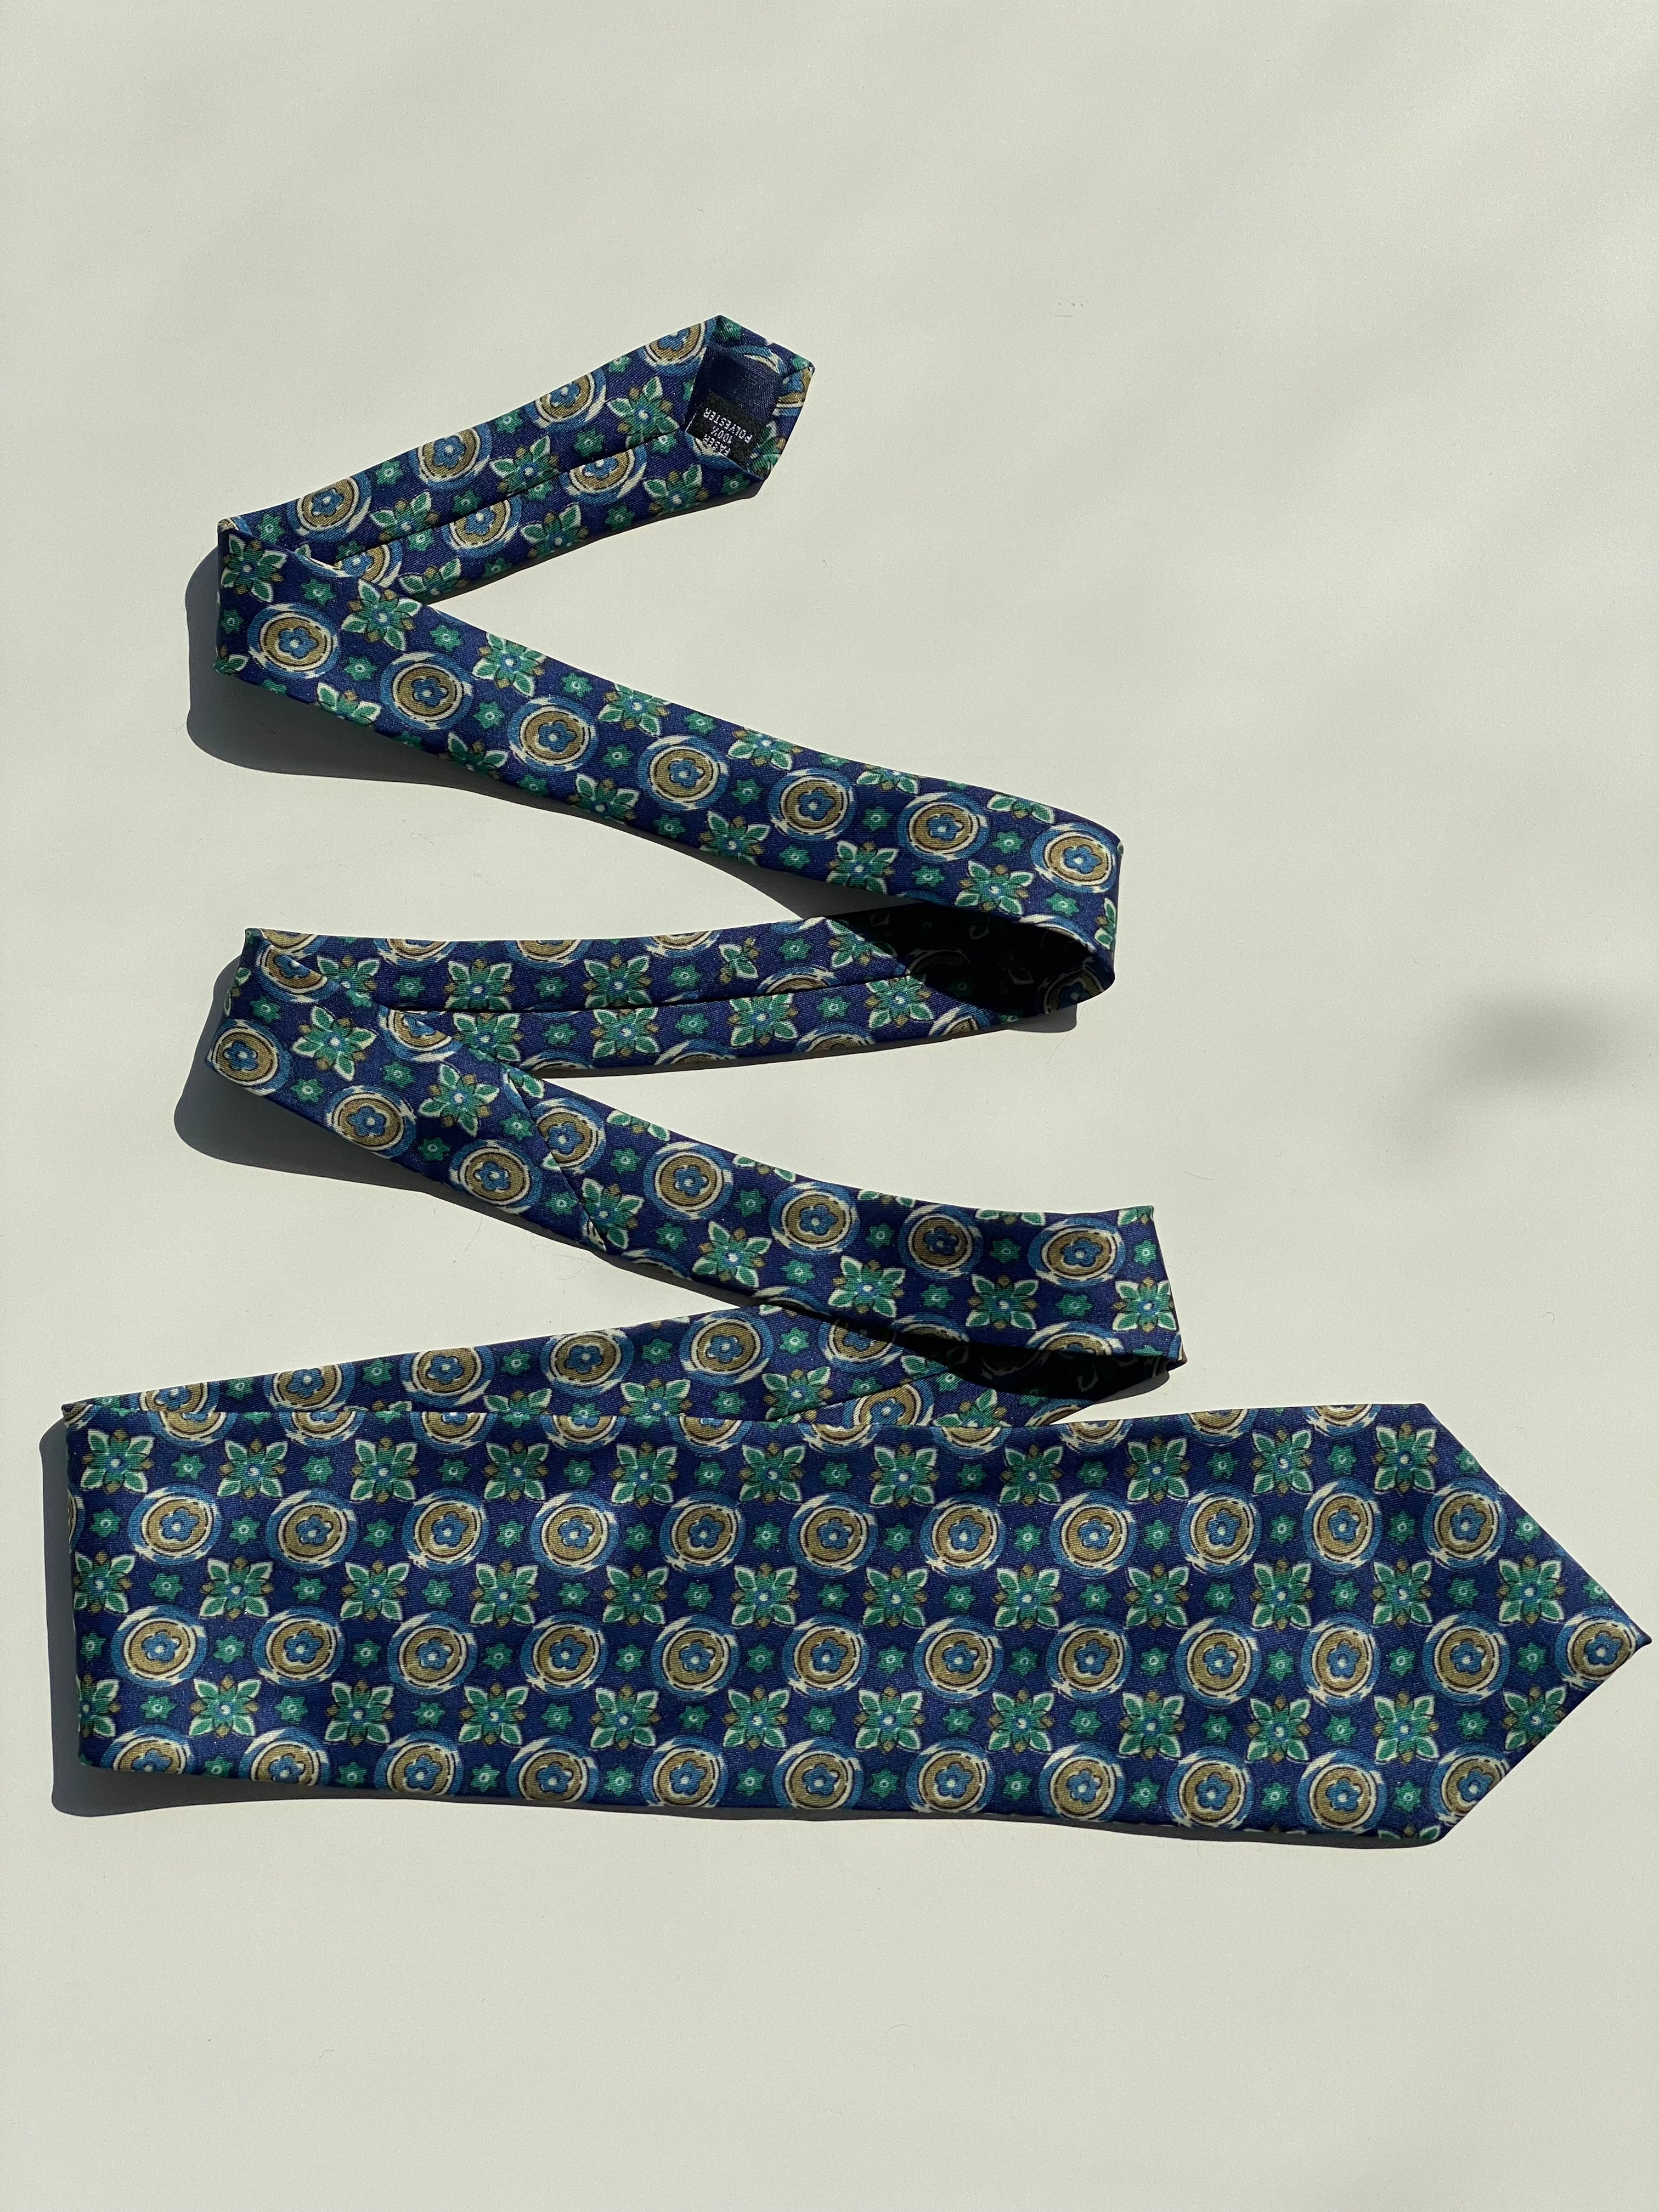 Vintage Paolo Comero Tie - Balagan Vintage Ties 00s, 80s, 90s, print, printed tie, prints, tie, ties